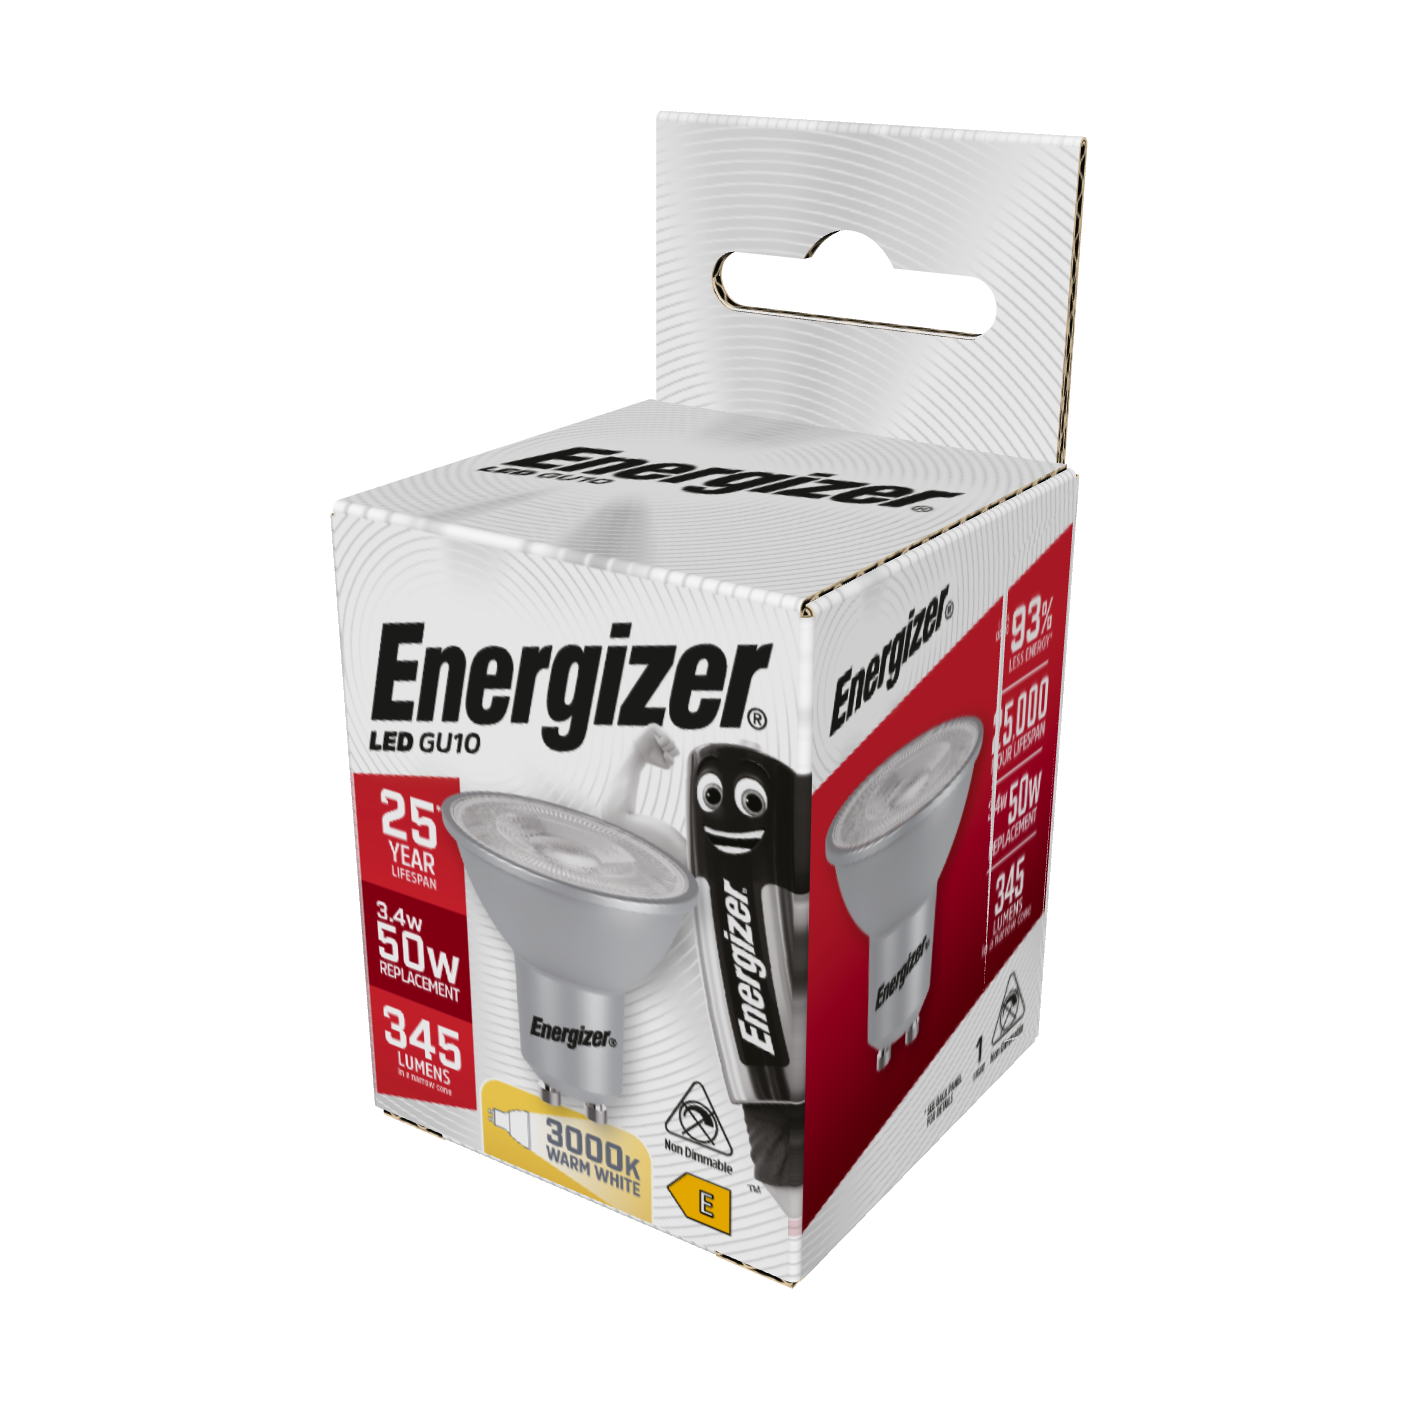 Energizer LED GU10 345lm 3,4W 3.000K (Blanco Cálido), Caja de 1